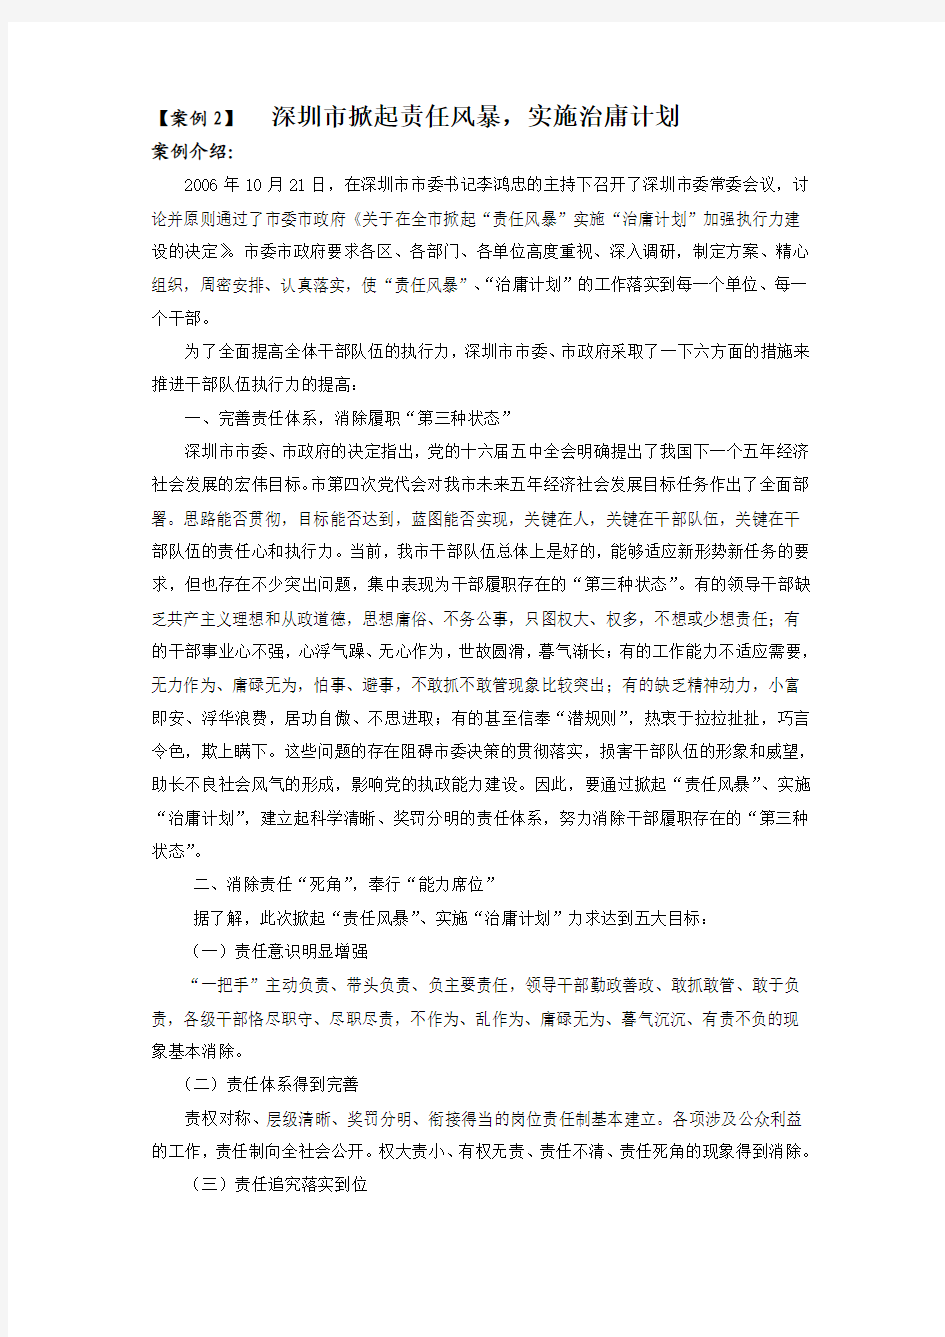 【案例2】 深圳市掀起责任风暴,实施治庸计划